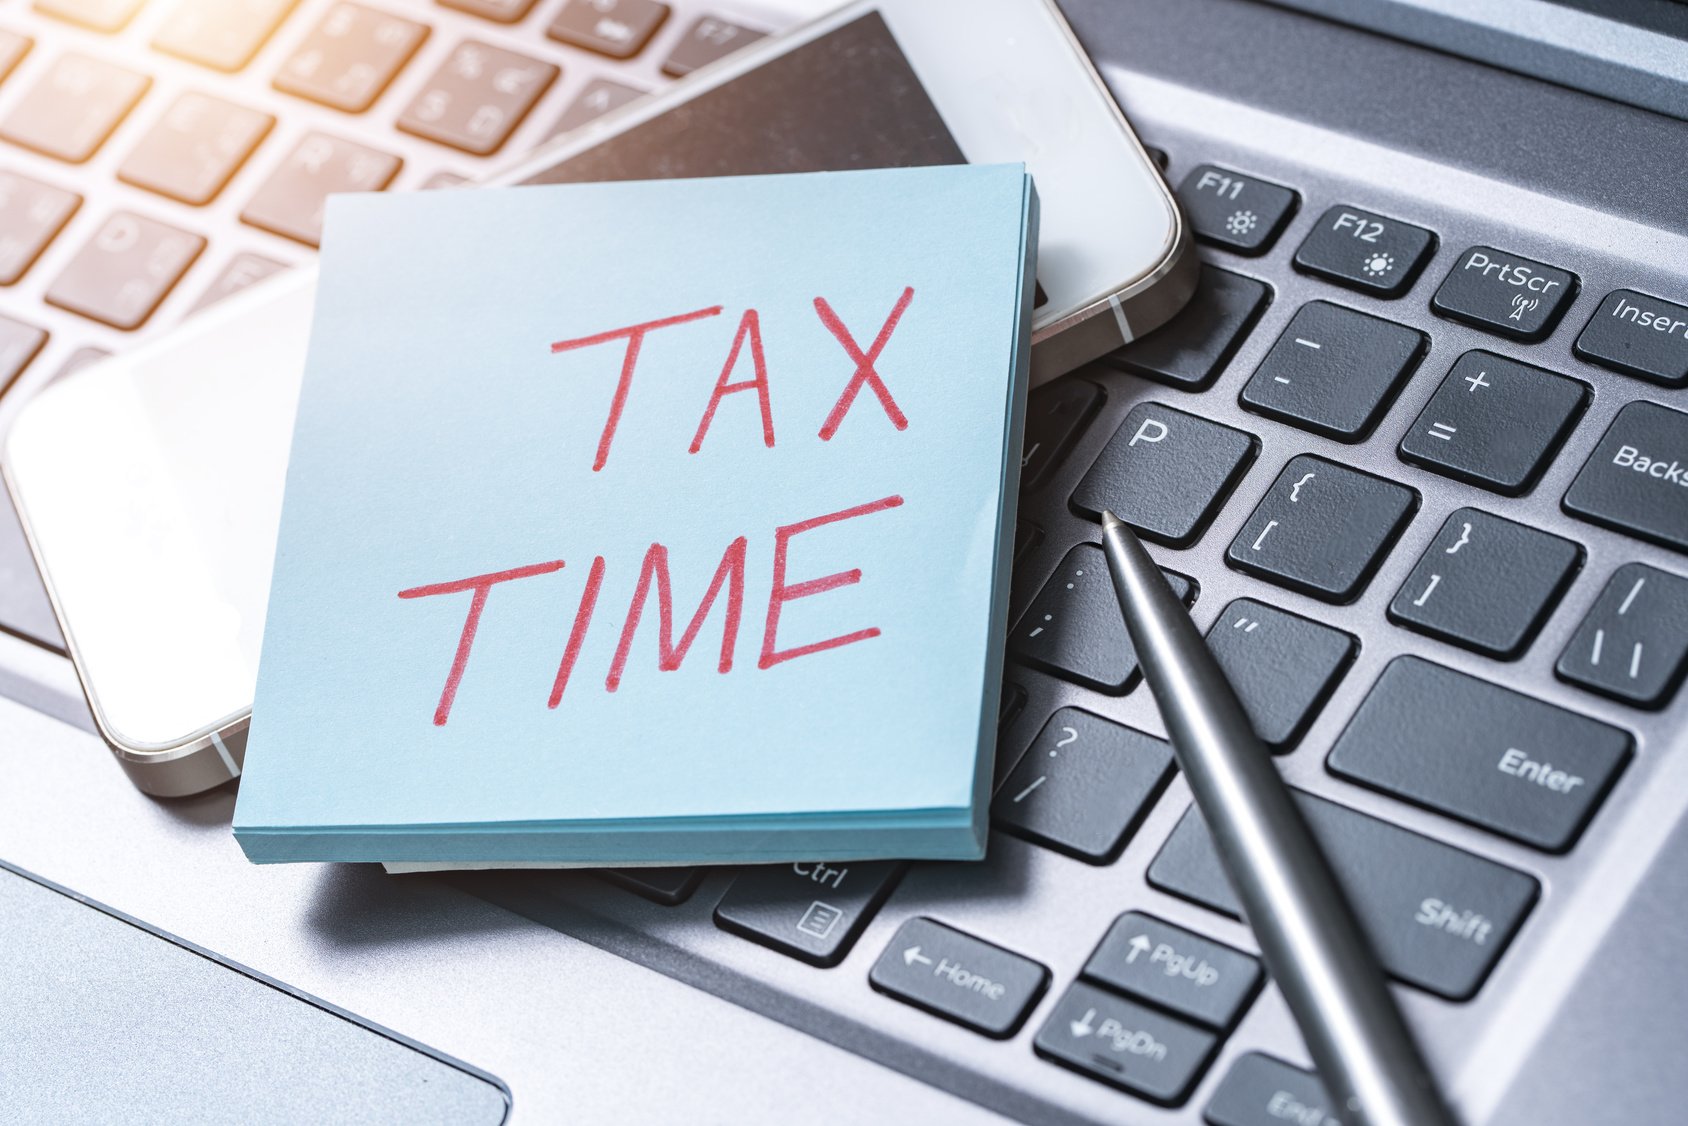 TaxisNet: Σε λειτουργία οι εφαρμογές για την υποβολή των φορολογικών δηλώσεων